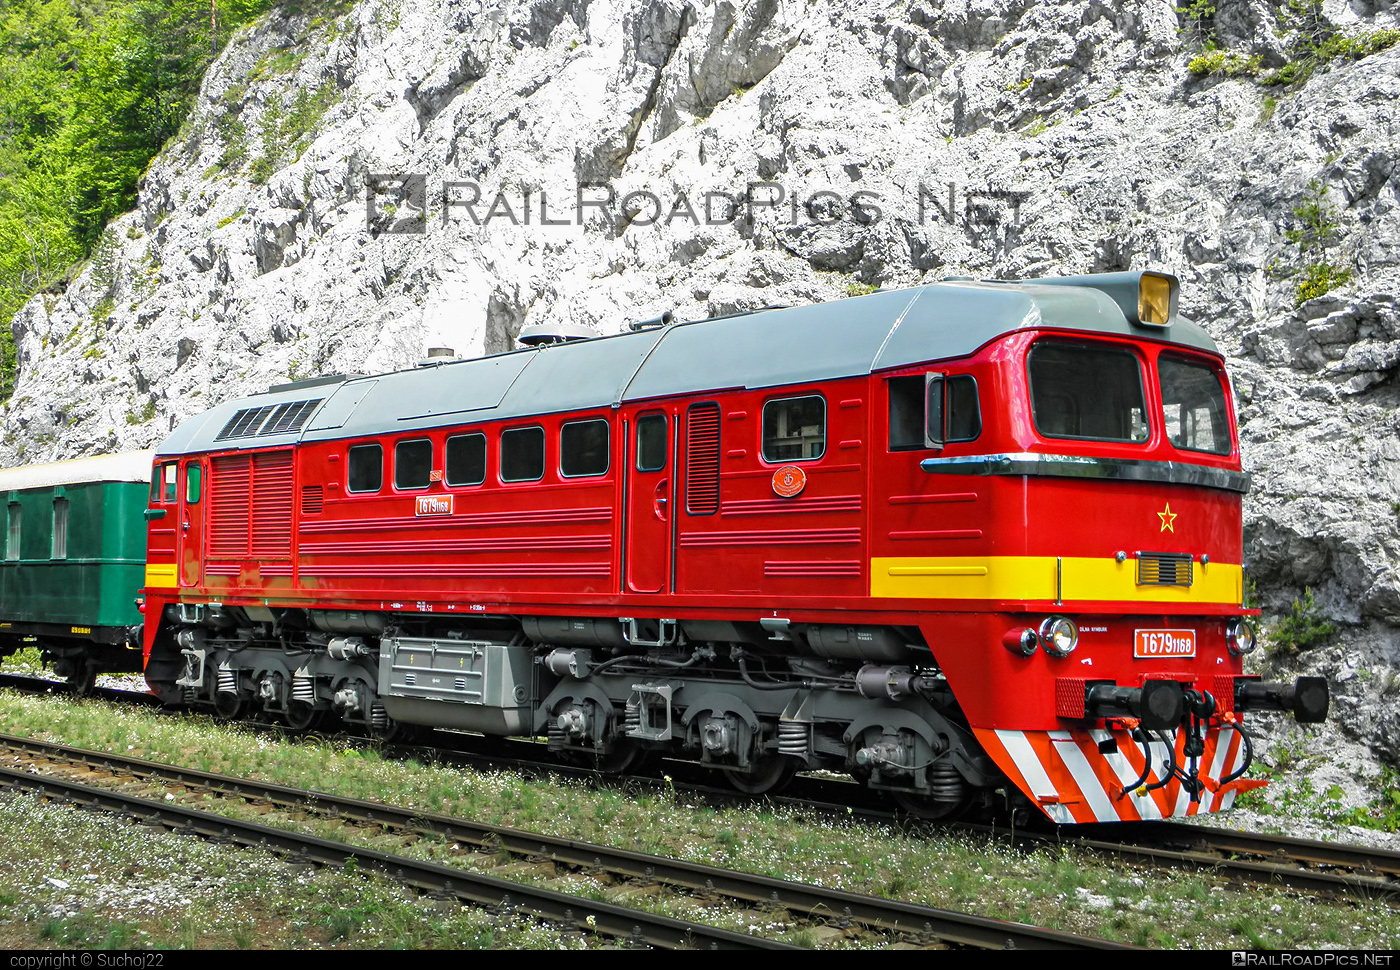 Lugansk M62 - T679.1168 operated by Železnice Slovenskej Republiky #csd #locomotivem62 #ltz #ltzm62 #lugansk #luganskm62 #luganskteplovoz #luhansklocomotiveworks #luhanskteplovoz #m62 #m62locomotive #sergei #zelezniceslovenskejrepubliky #zsr